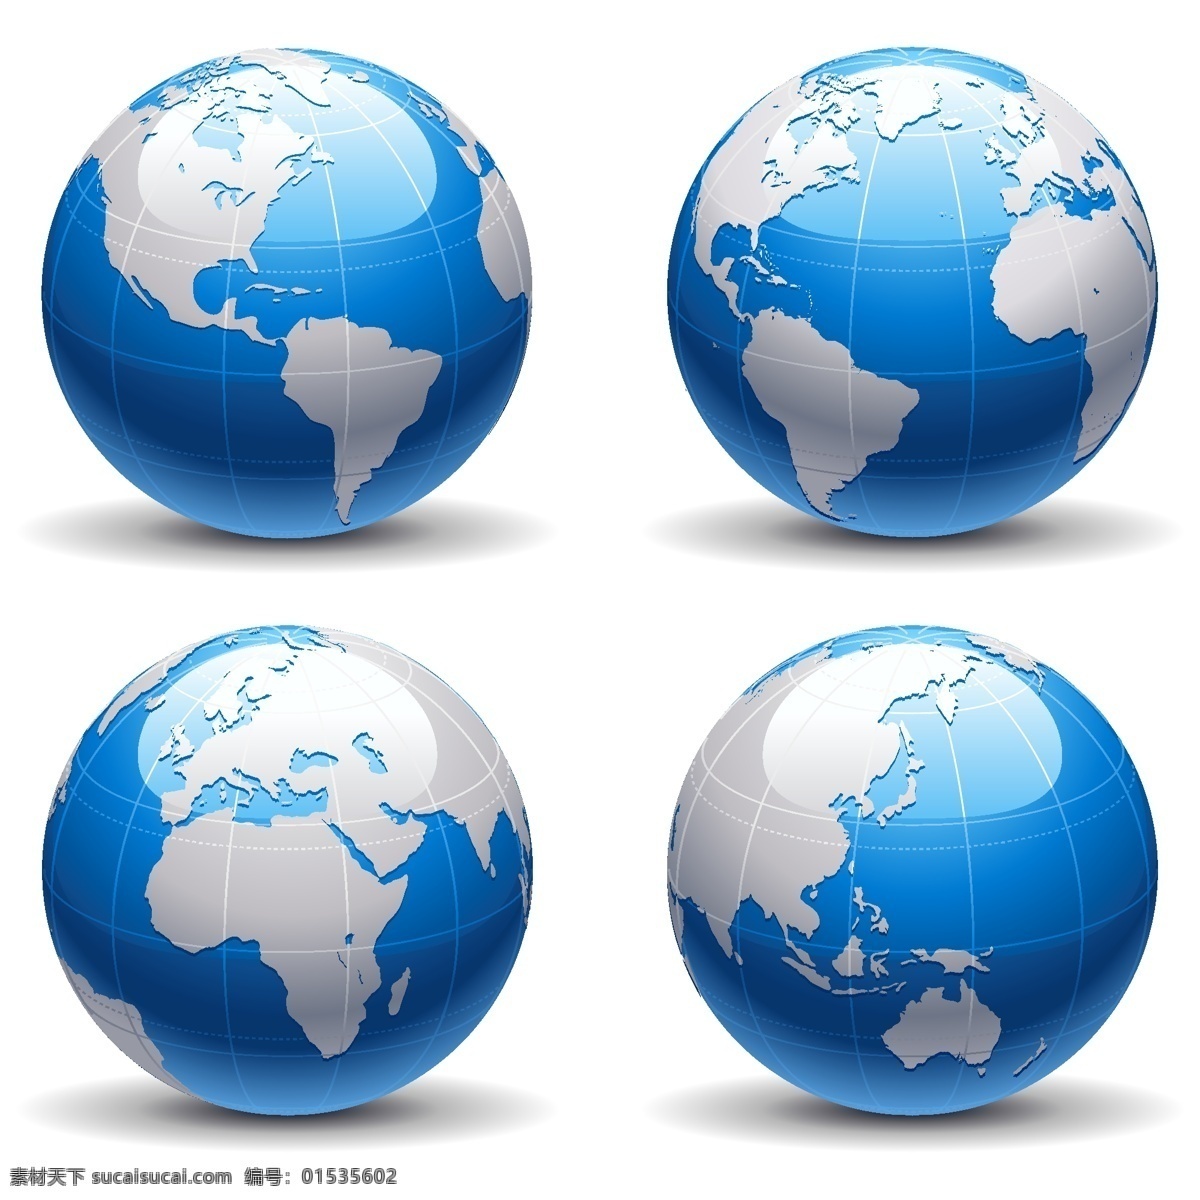 地球 矢量图 标志 地球标志 地球矢量图 四个面地球 四个地球 四个矢量地球 地球矢量四个 矢量地球图 可编辑地球 地球图 地球平面图 3d地球图 炫酷地球